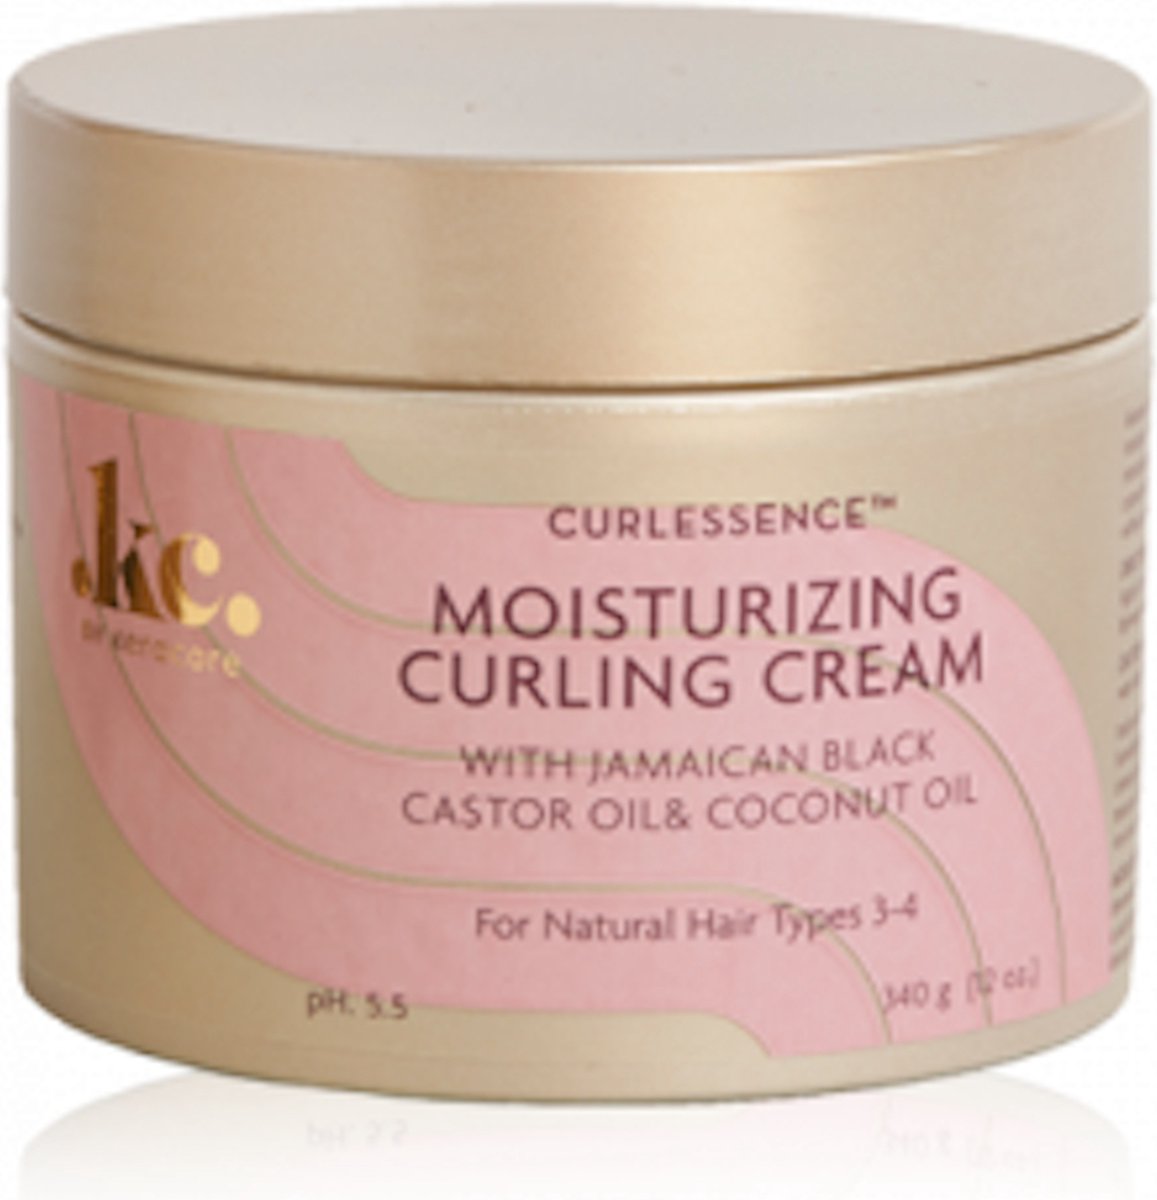 Keracare Curl Essence Moisturizing Curling Cream 340ml